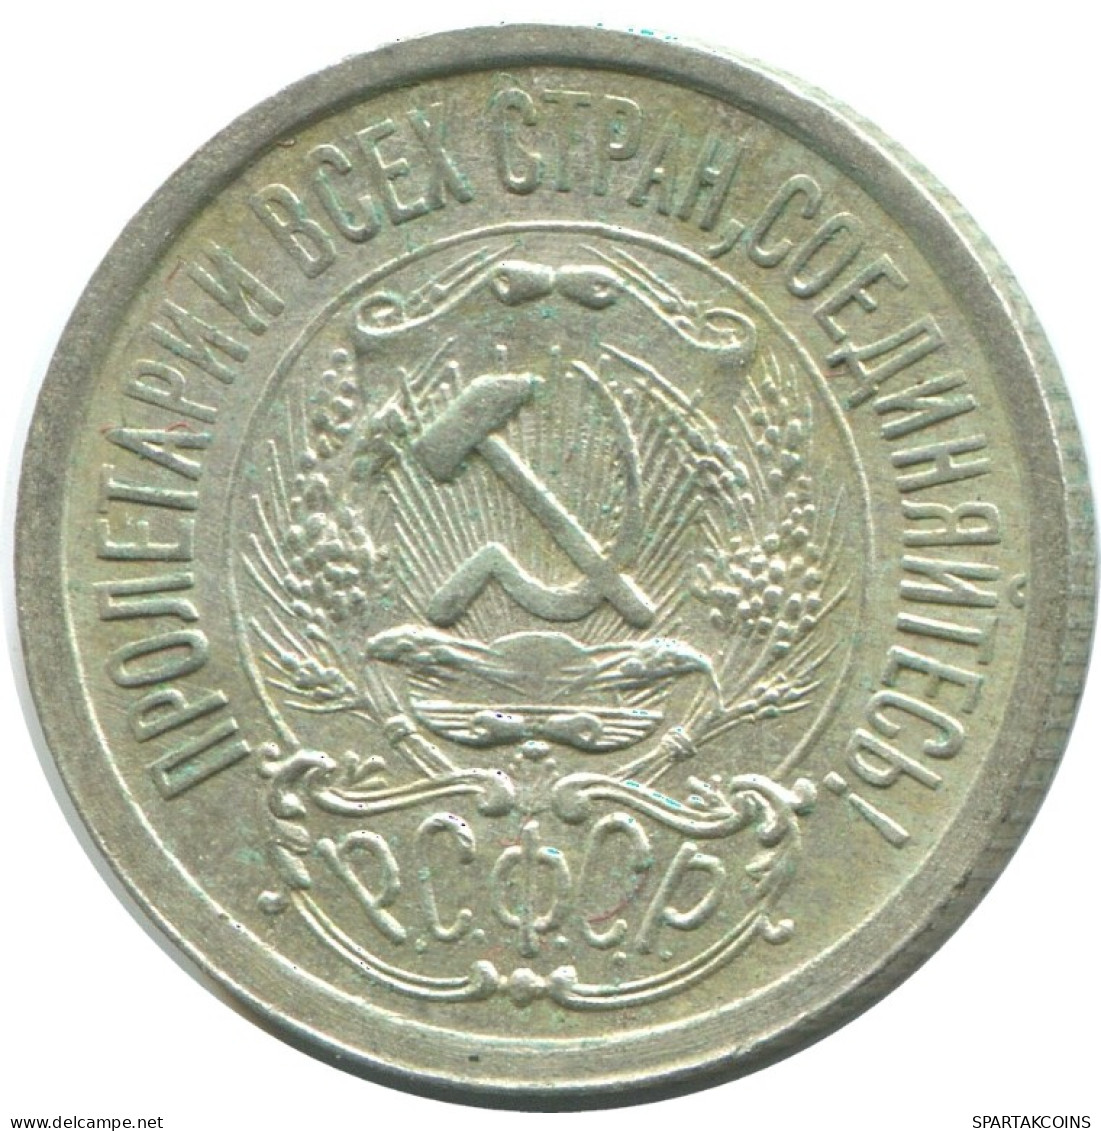 15 KOPEKS 1923 RUSSIA RSFSR SILVER Coin HIGH GRADE #AF021.4.U.A - Rusland